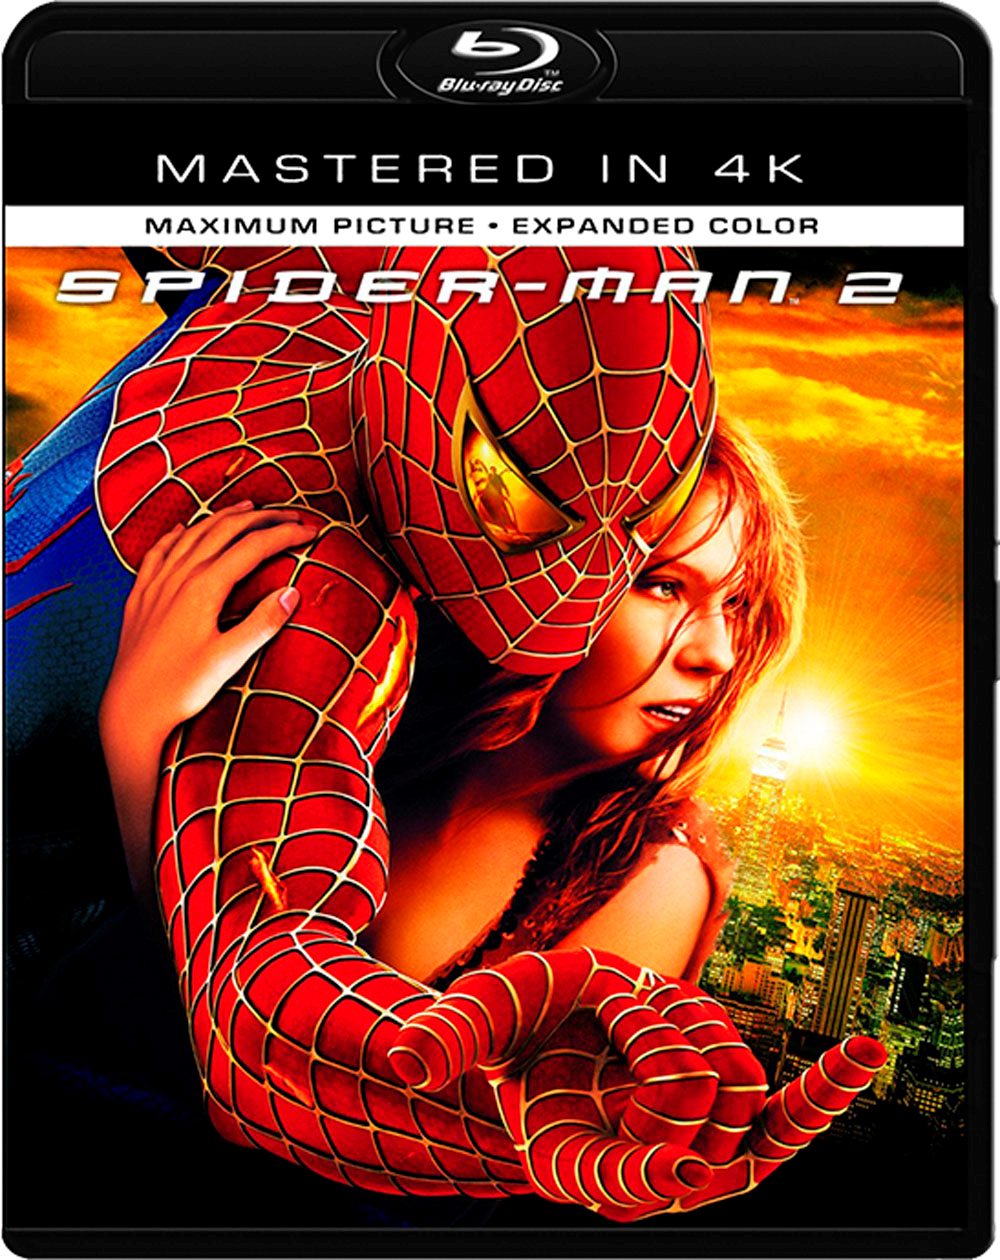 |倒序浏览 |阅读模式 [蜘蛛侠1].Spider-Man.2002.UHD.BluRay.2160p.HEVC.TrueHD.7.1-winning@CHDBits    54.57G-1.jpg